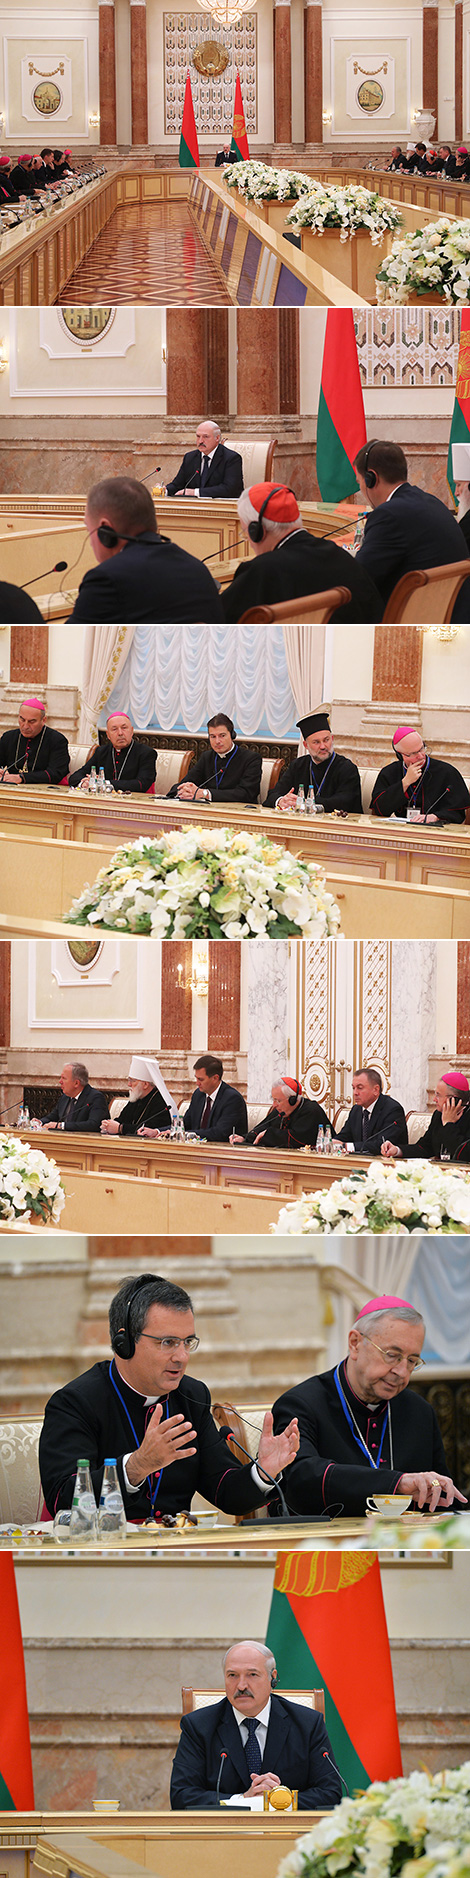 Встреча Александра Лукашенко с участниками пленарного заседания Совета епископских конференций Европы